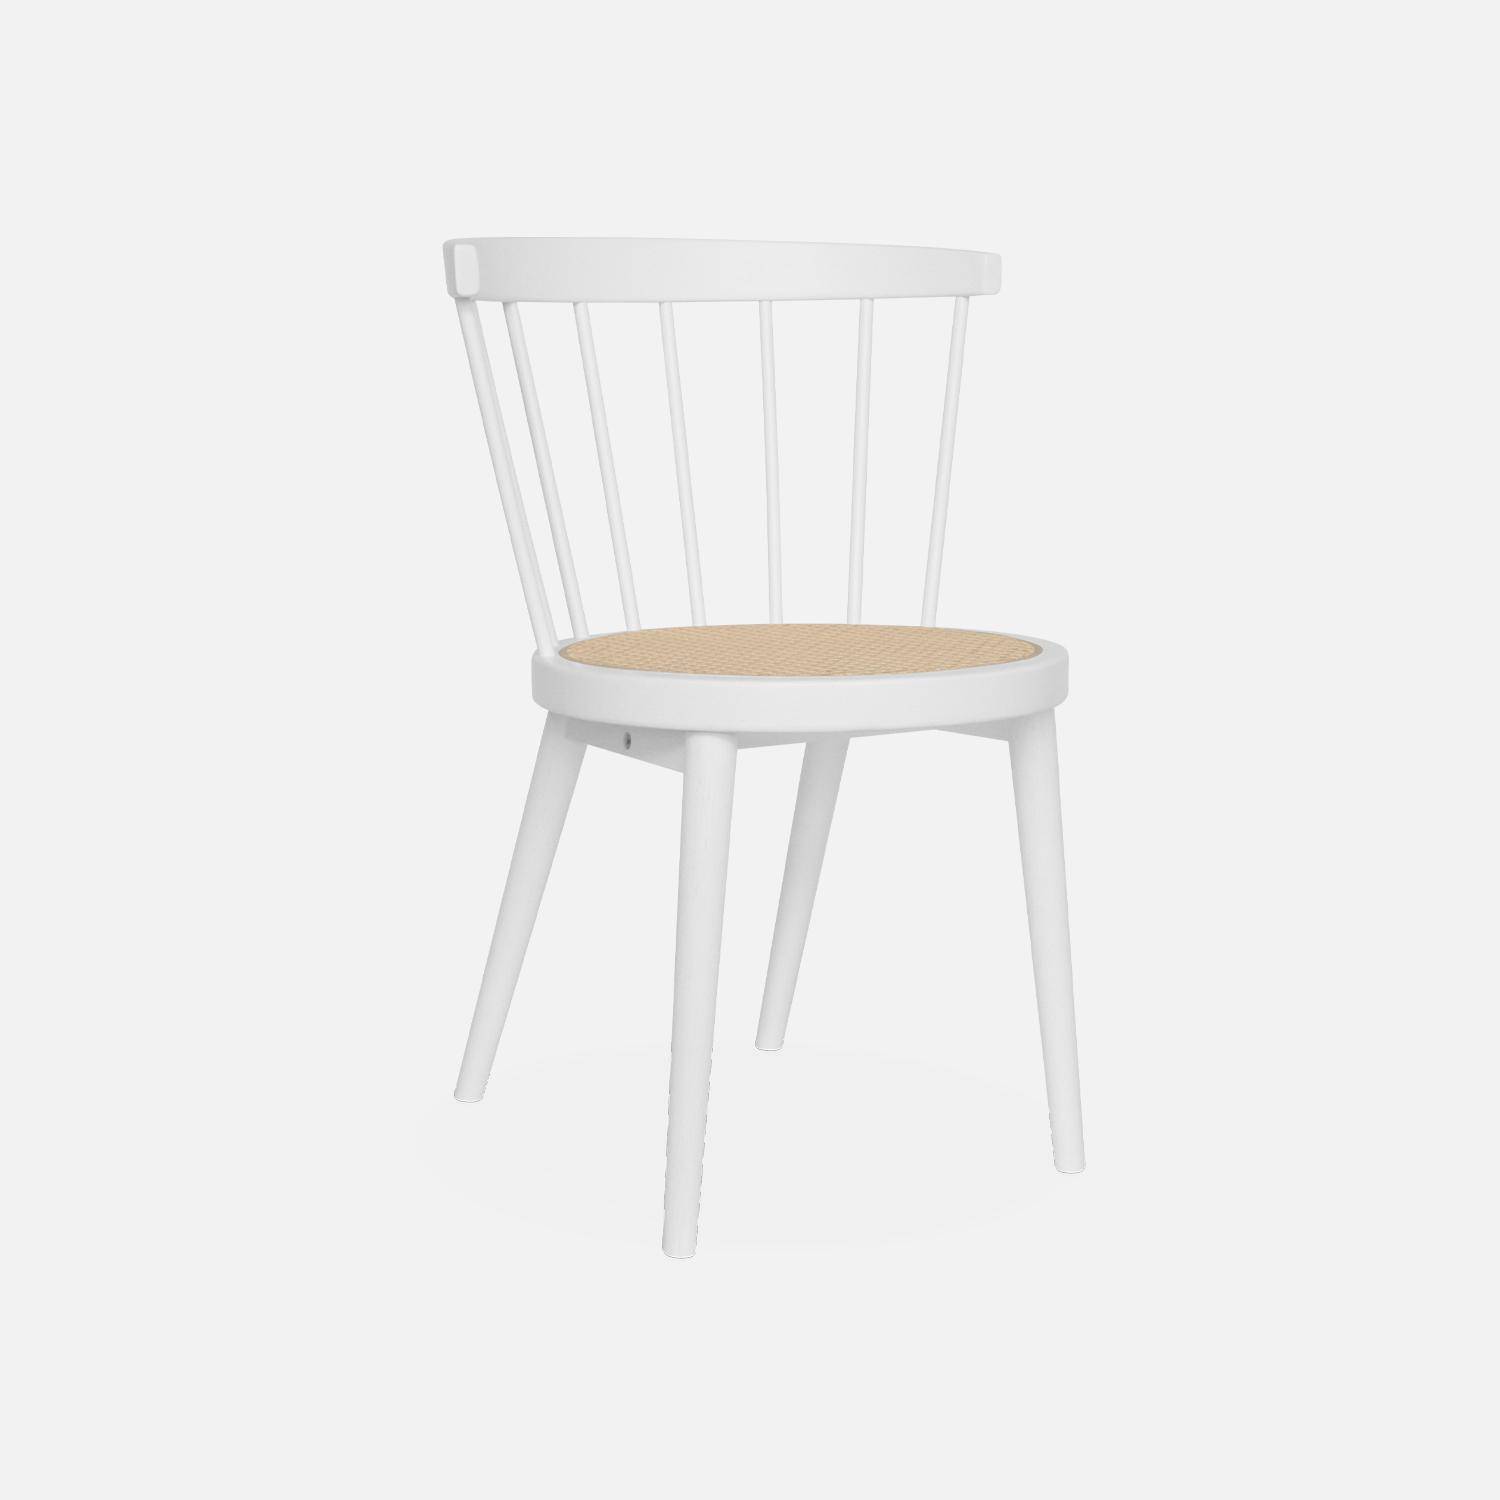 Set di 2 sedie in legno bianco e canna, Nora, L 54 x P 54 x H 76,5 cm. Photo4